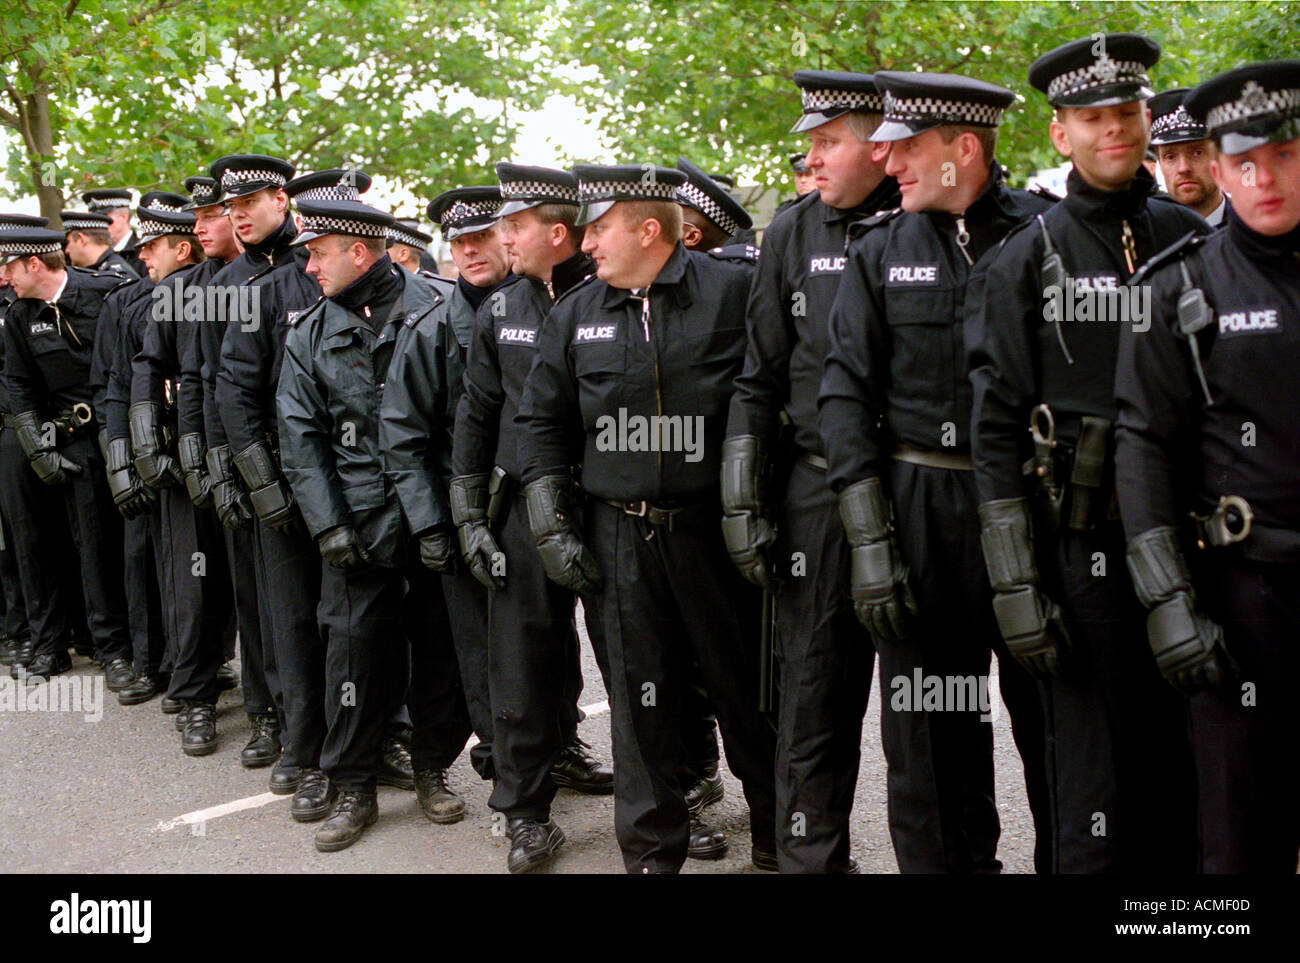 Police line up lors d'une manifestation à l'Est de Londres. Banque D'Images